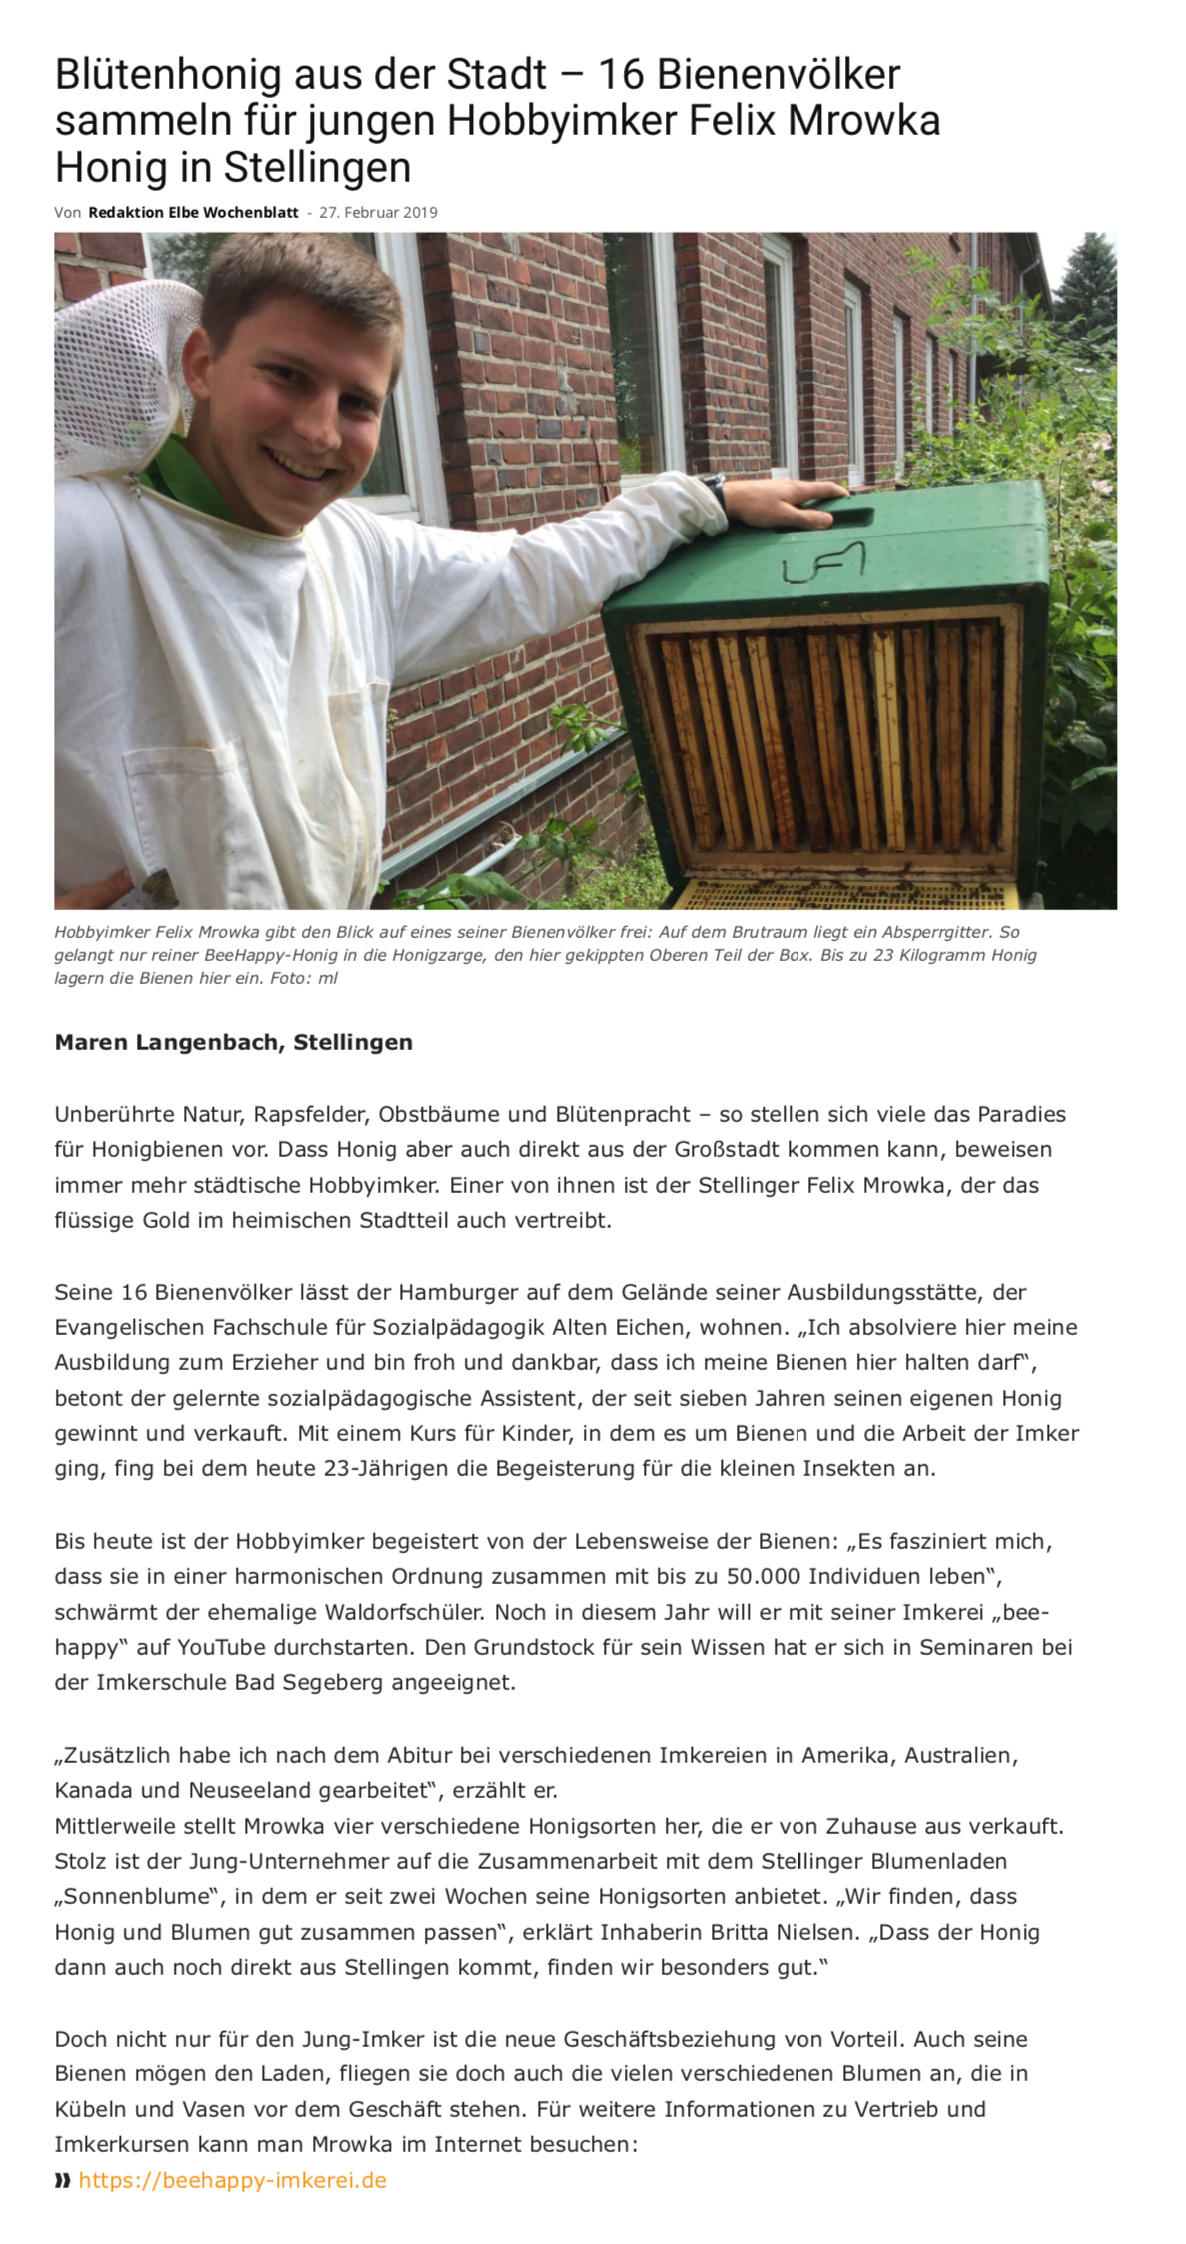 Blütenhonig aus der Stadt – 16 Bienenvölker sammeln für jungen Hobbyimker Felix Mrowka Honig in Stellingen - Artikel aus dem Elbe Wochenblatt